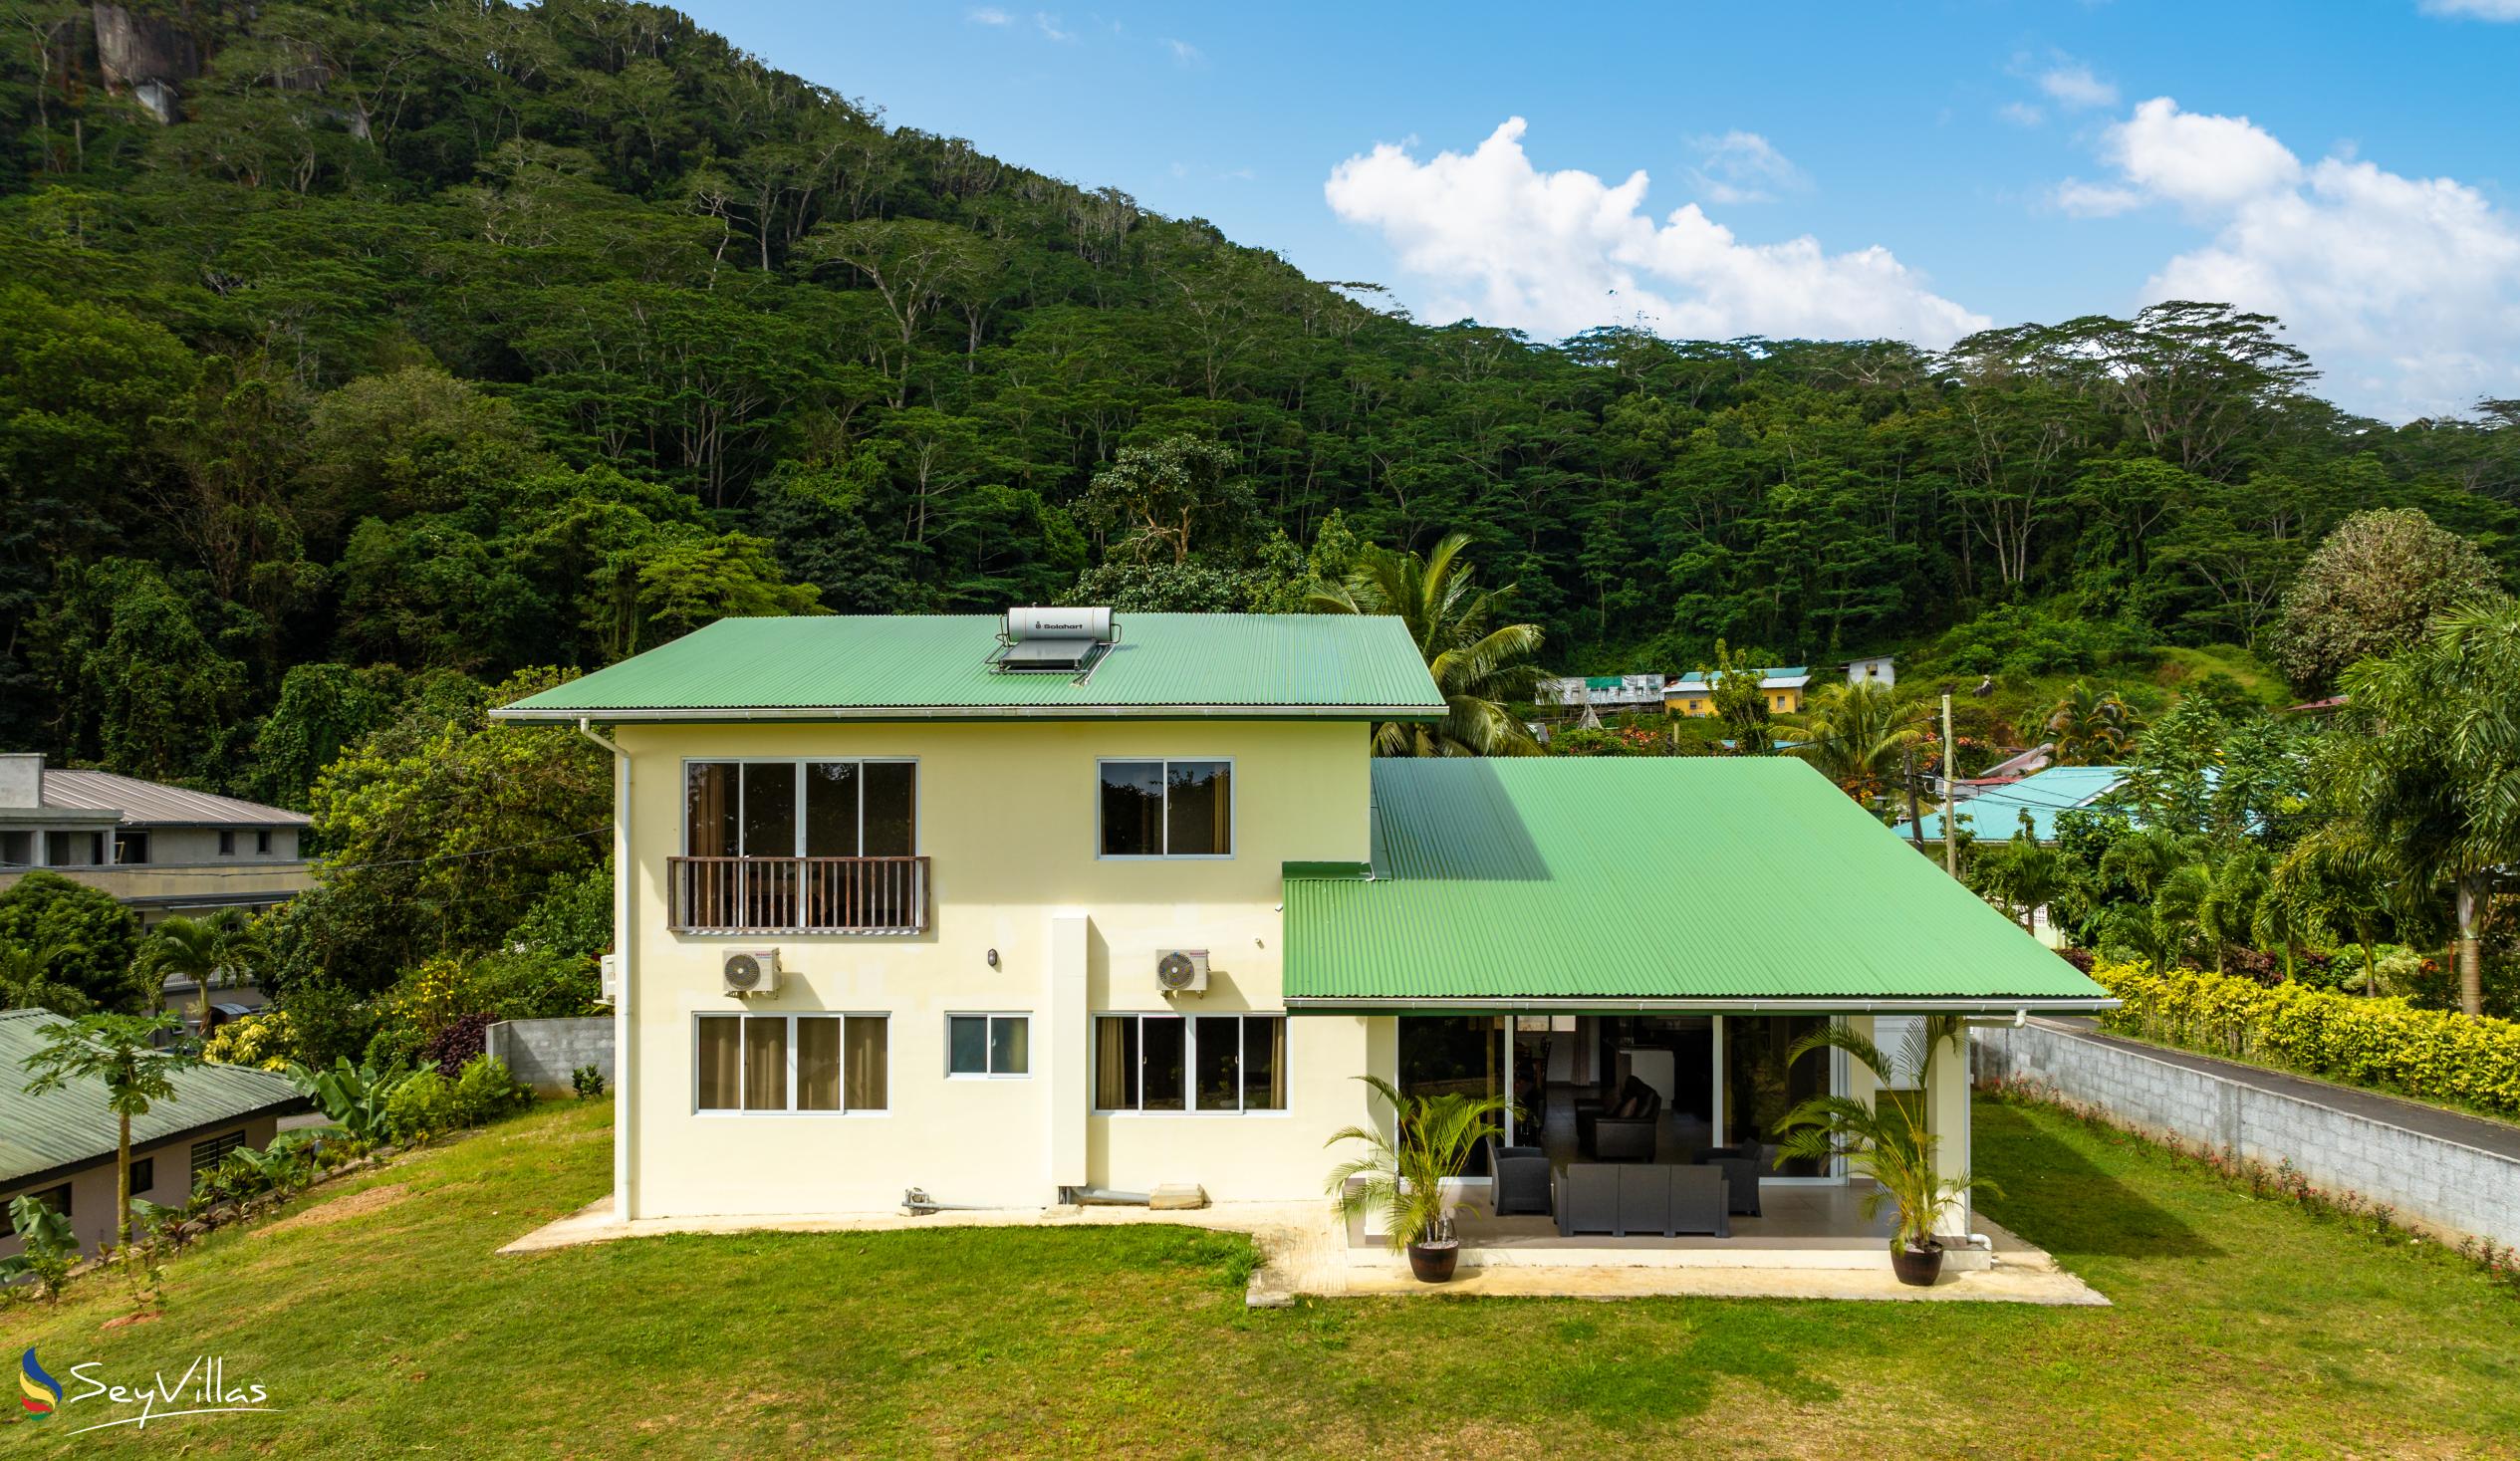 Foto 1: Maison Dora - Extérieur - Mahé (Seychelles)